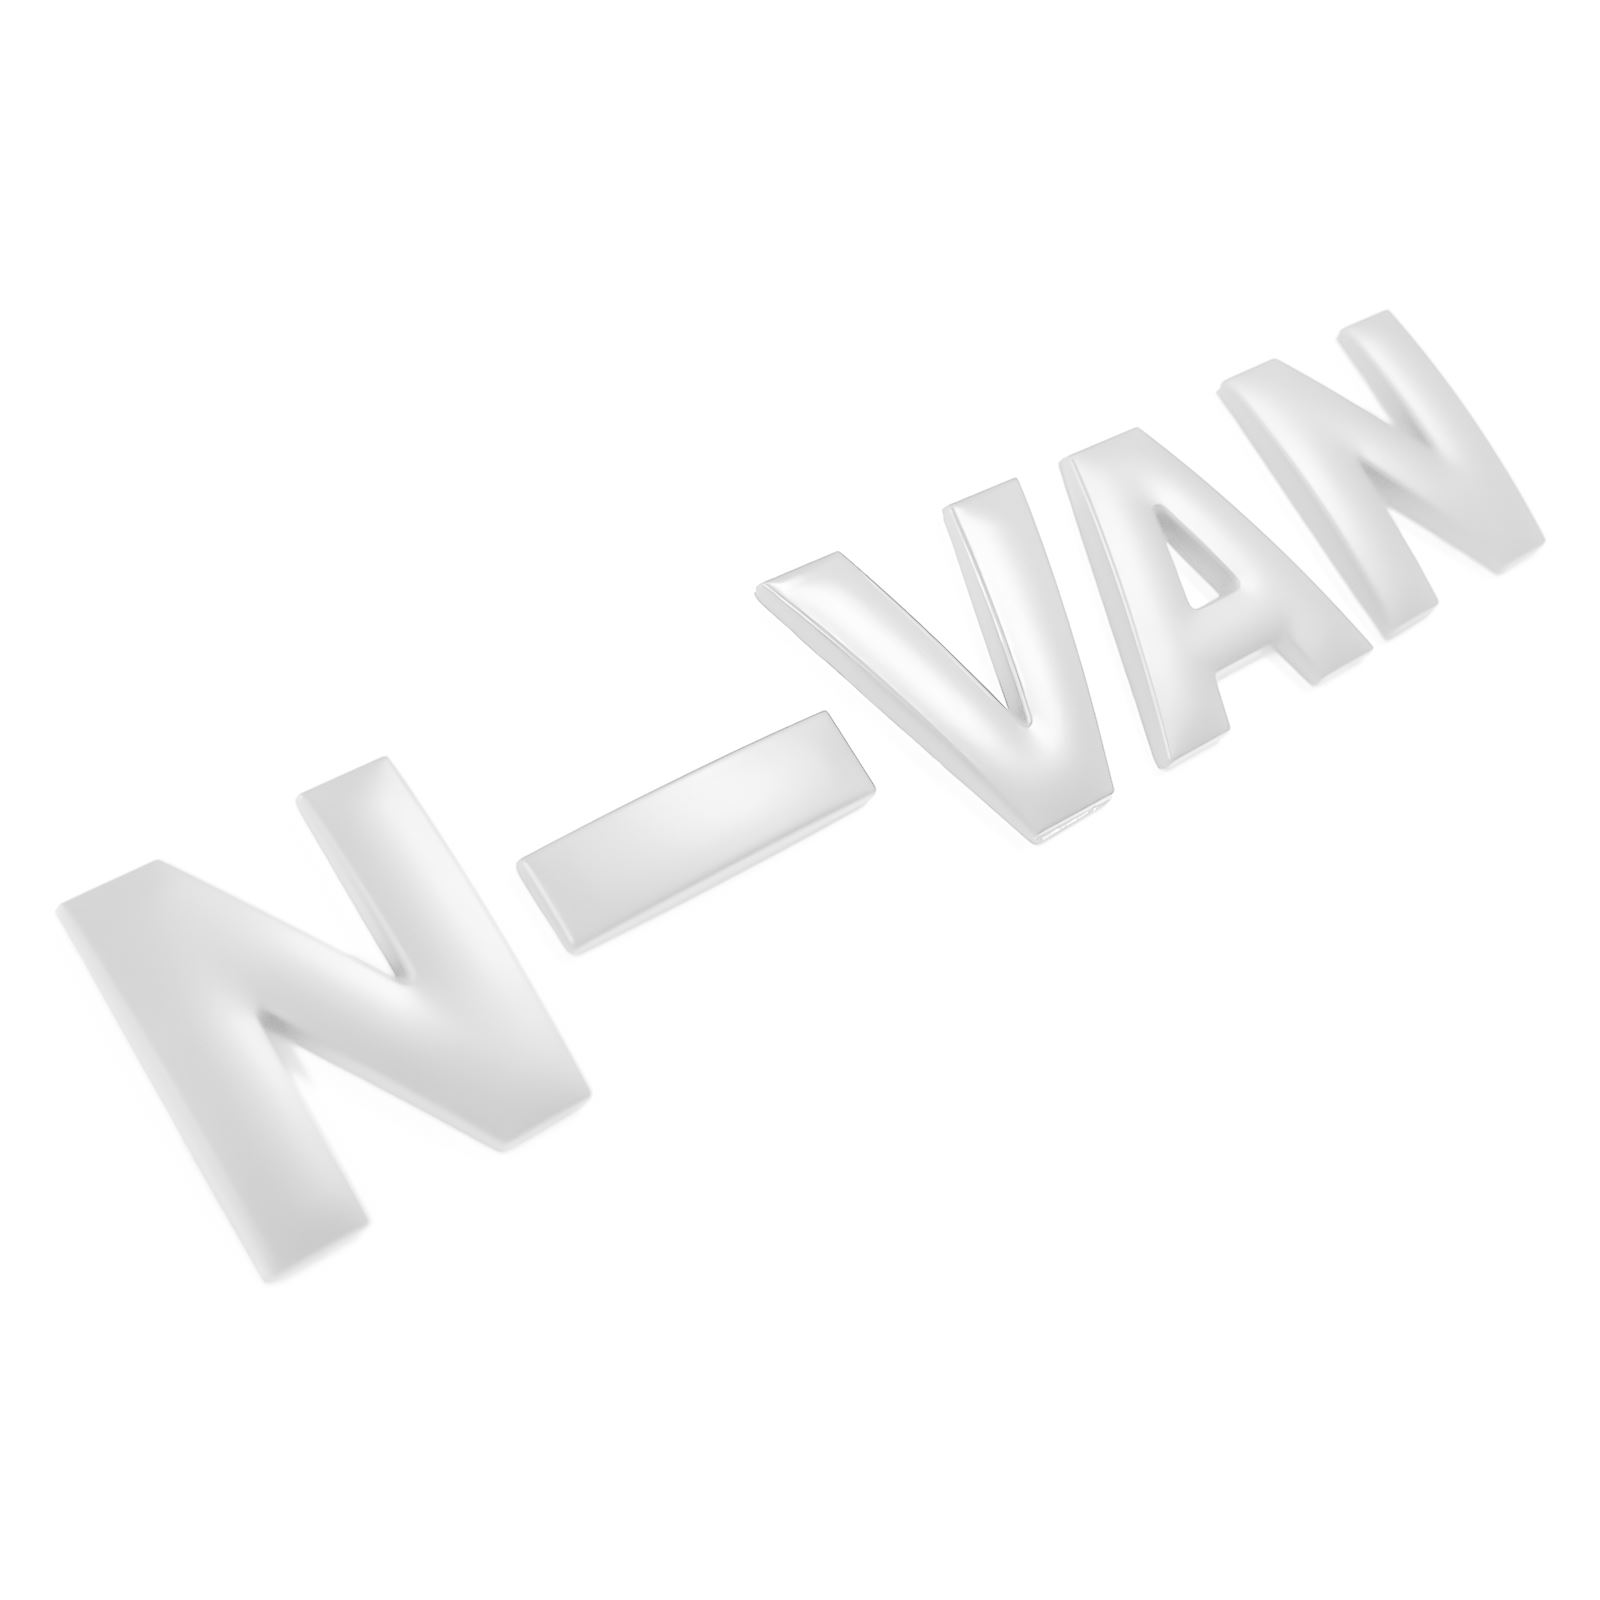 N-VAN 3D エンブレム ロゴ アルファベット ガーニッシュ ステッカー カスタム パーツ アク...